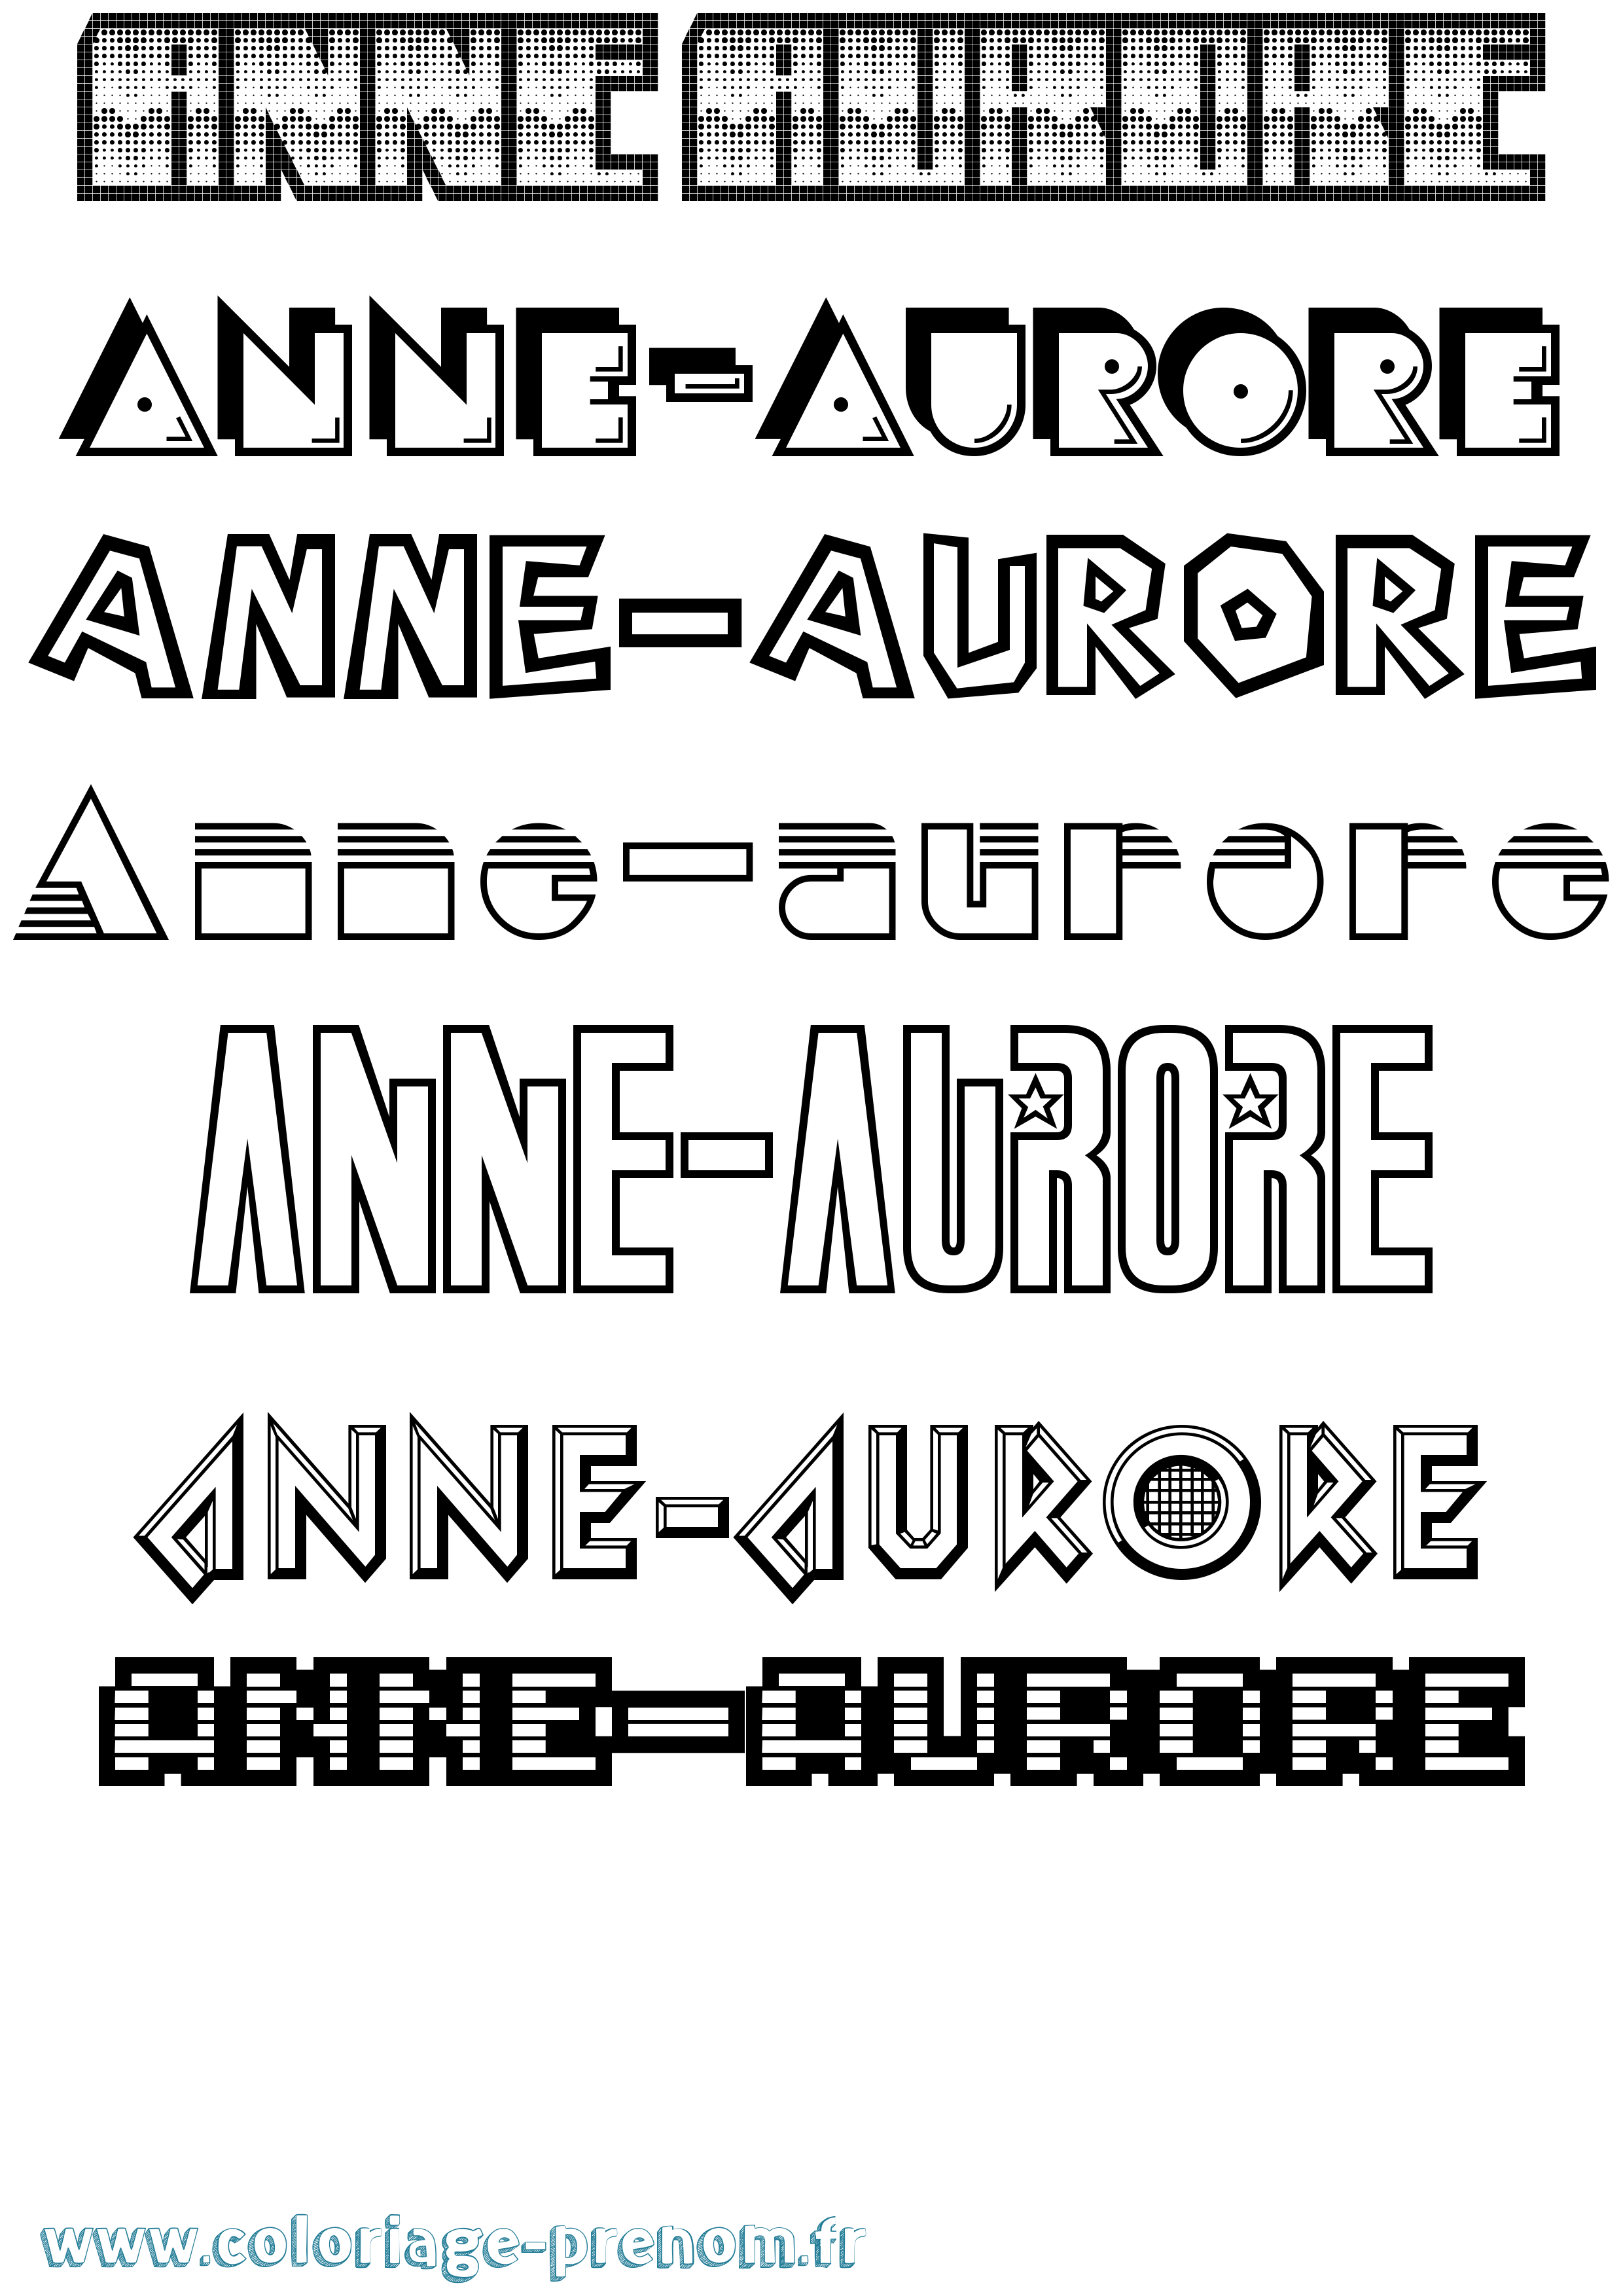 Coloriage prénom Anne-Aurore Jeux Vidéos